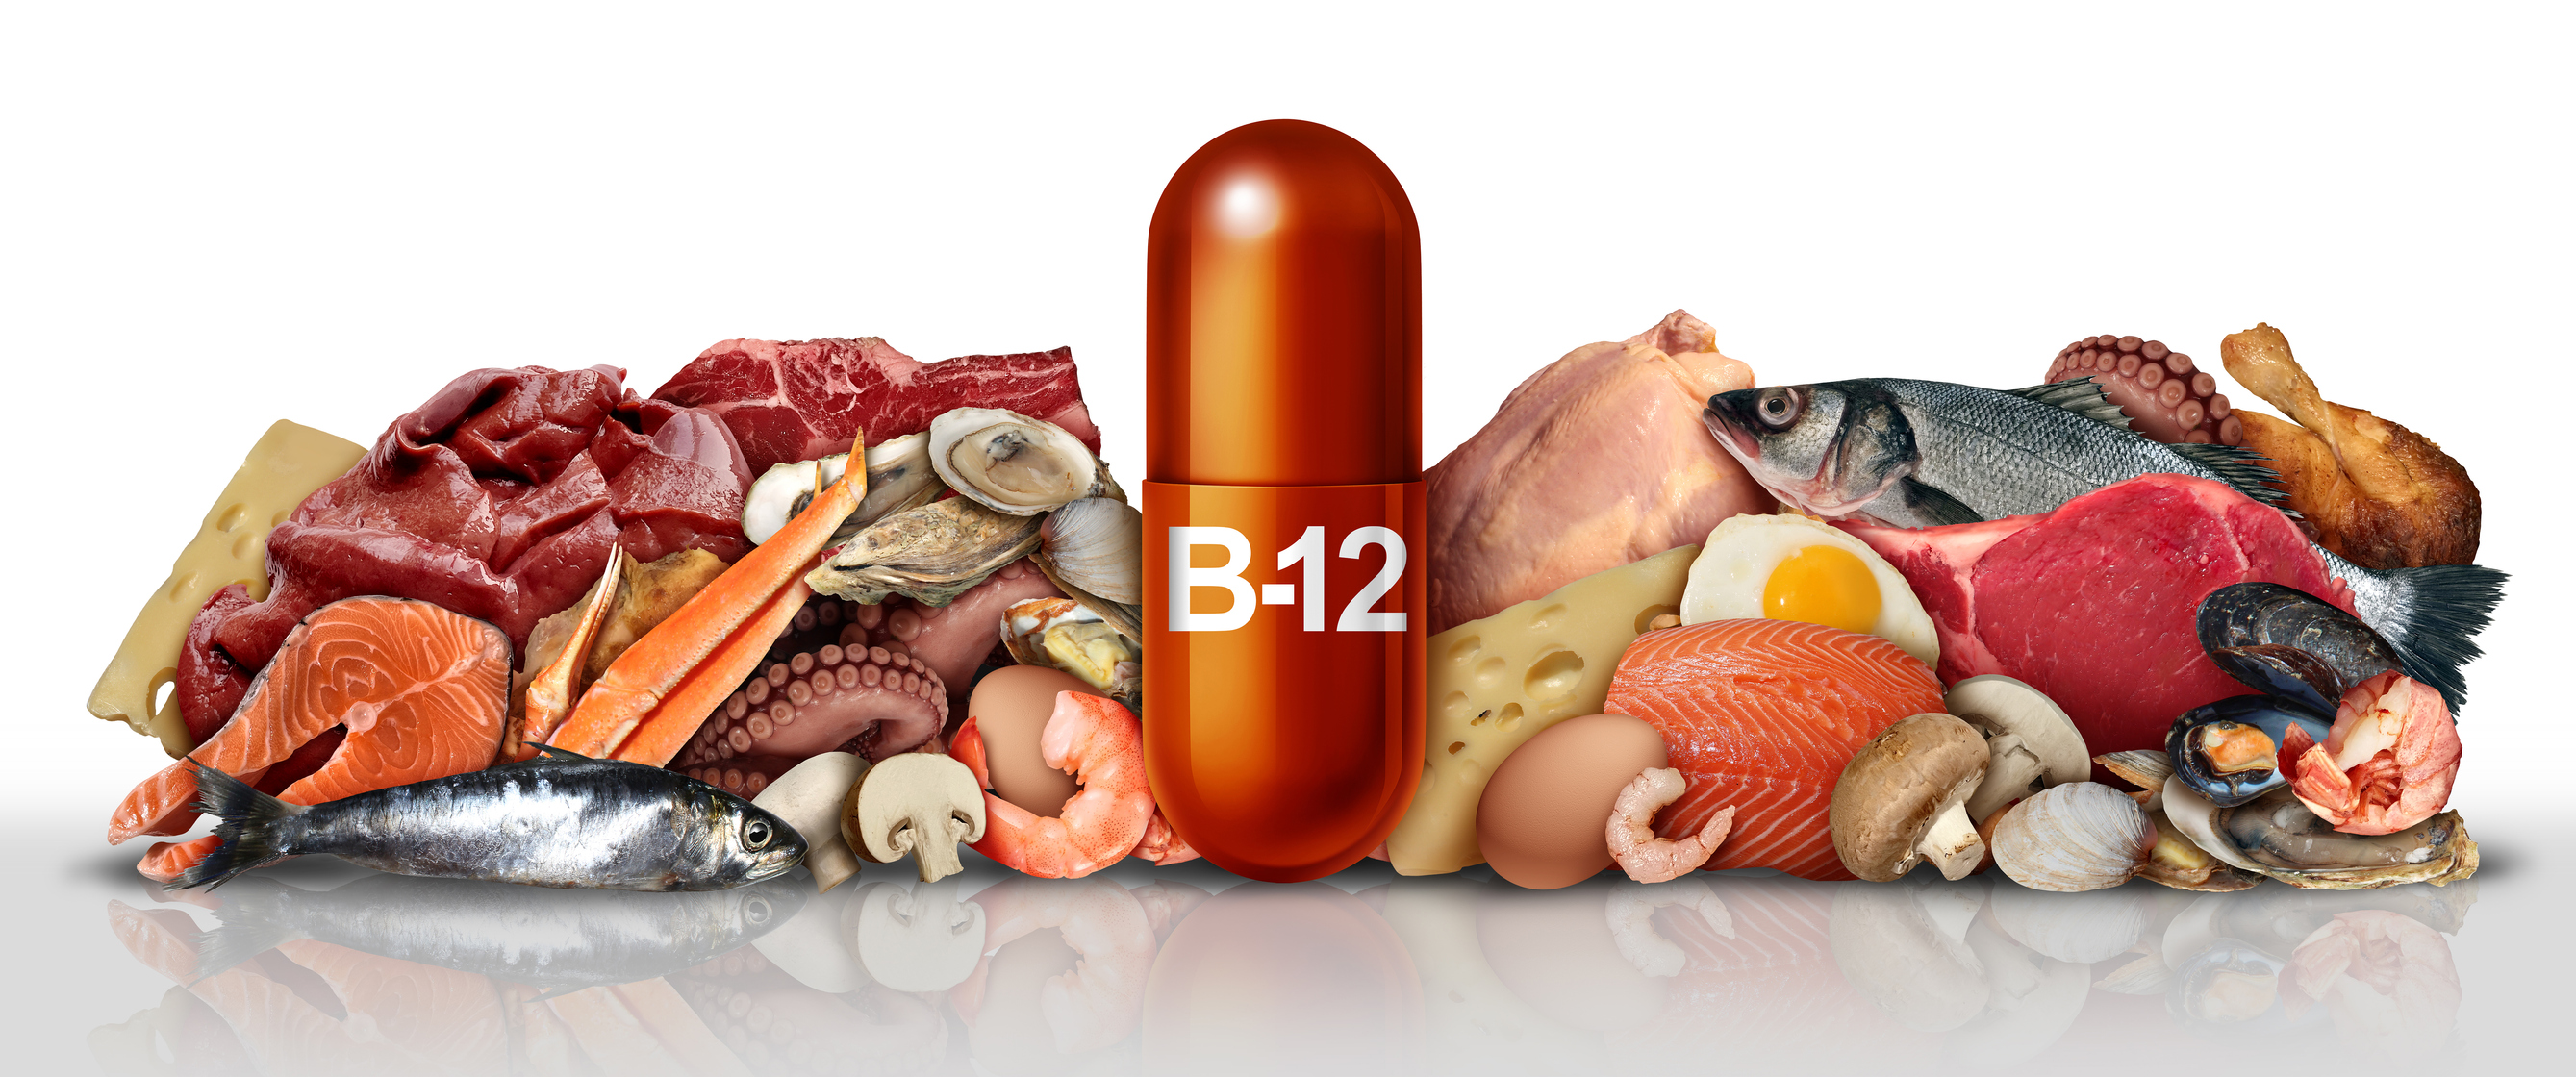 Produkty obsahujúce vitamín B12